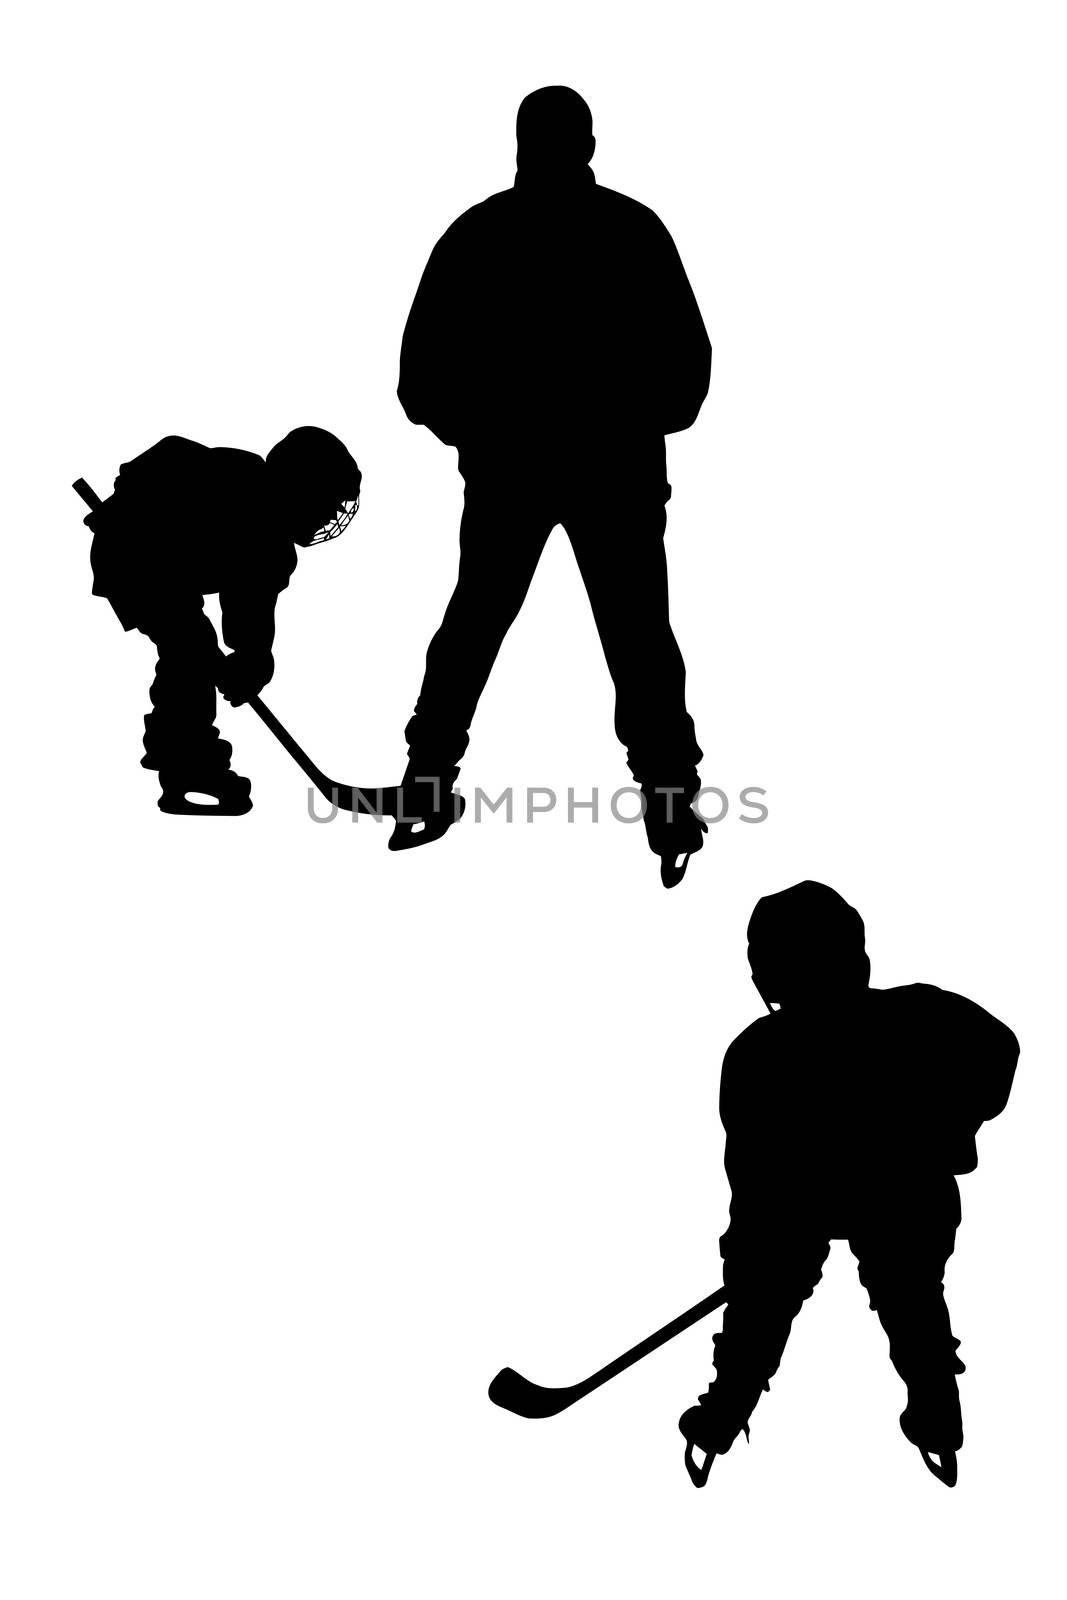  hockey players silhouettes by zhannaprokopeva